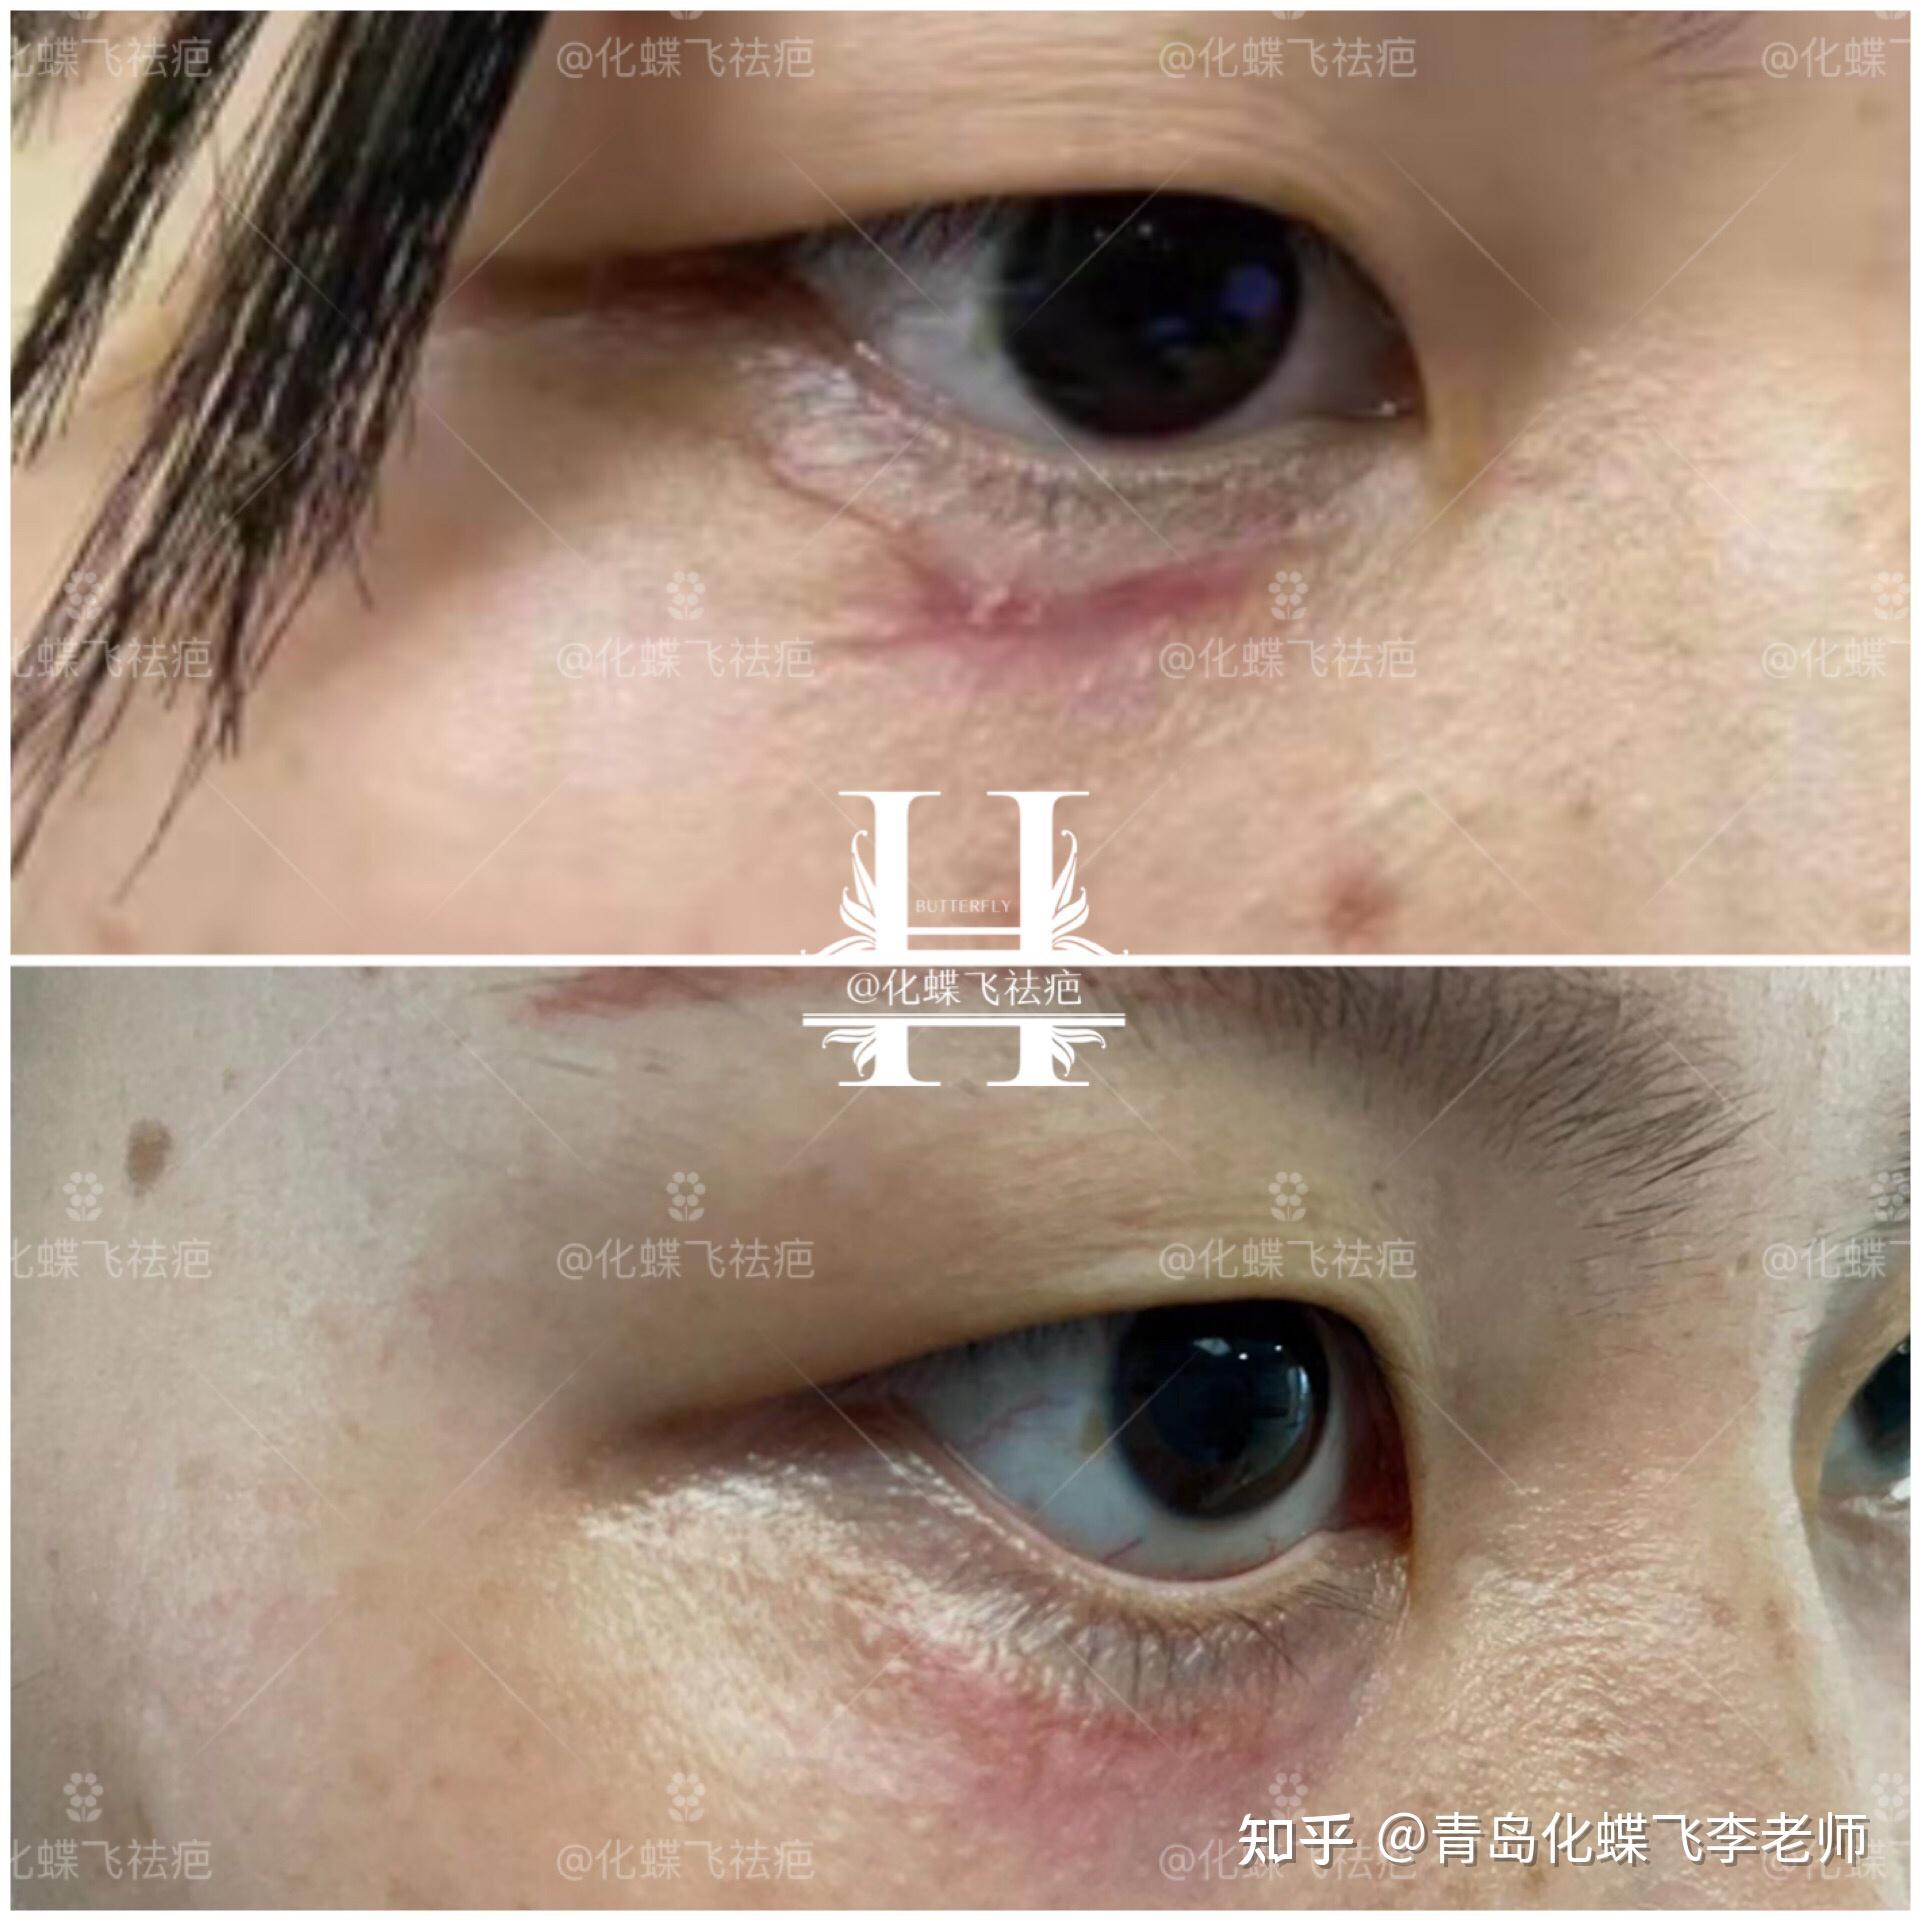 浙江杭州,一场意外的伤害来得那么猝不及防,眼睛下面的疤痕,让美女